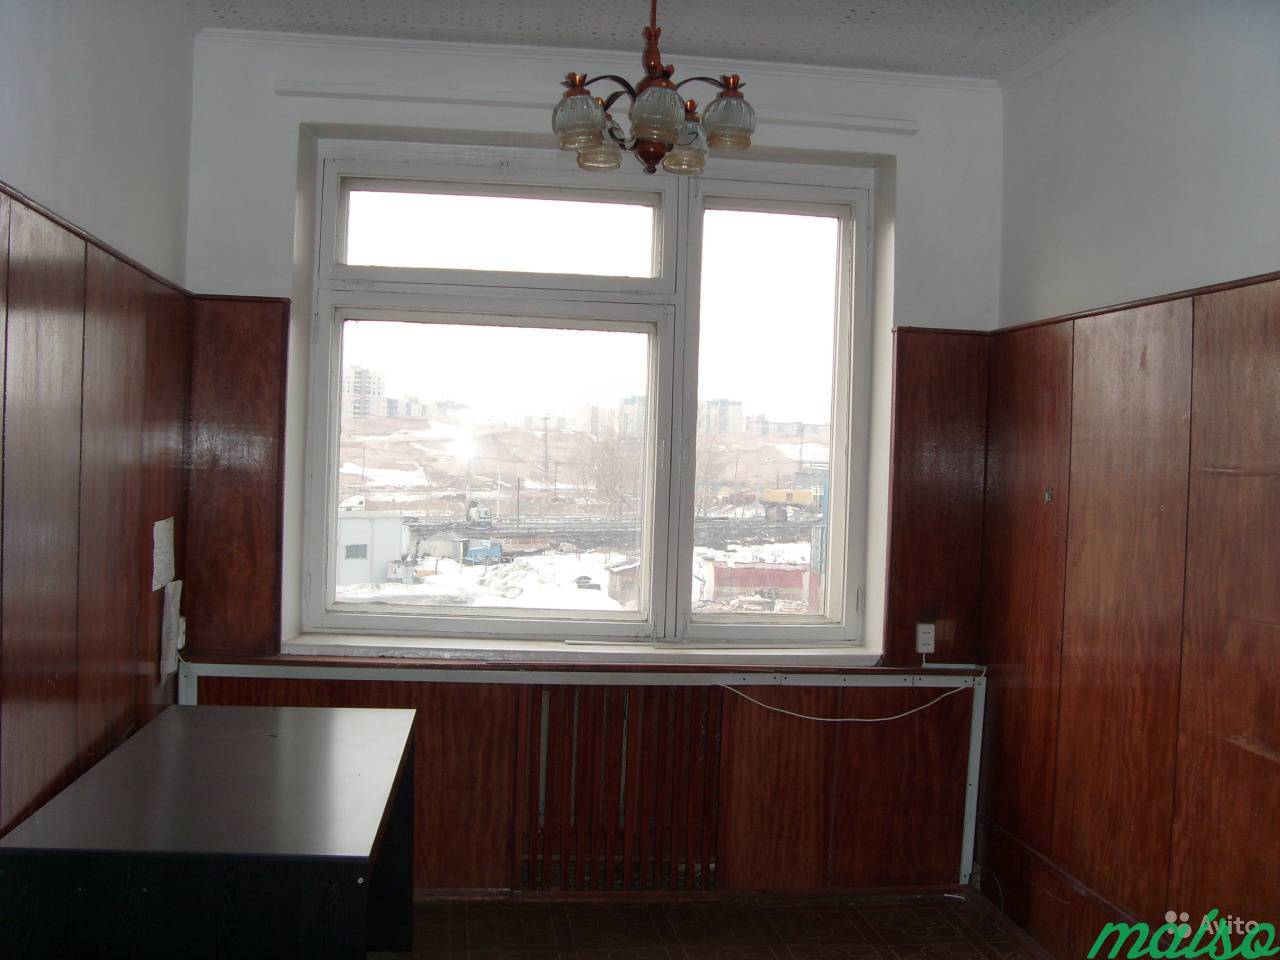 Офис 14 м², круглосуточный доступ, от собственника в Санкт-Петербурге. Фото 1